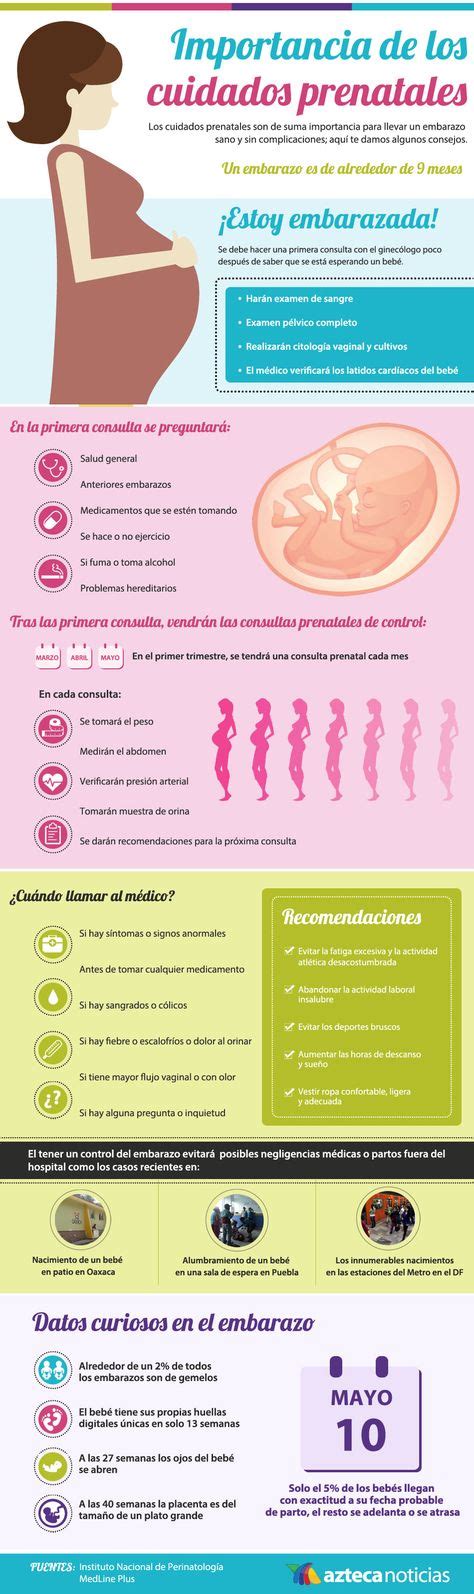 9 Ideas De Gestacion Embarazo Y Parto Cuidados En El Embarazo Embarazo